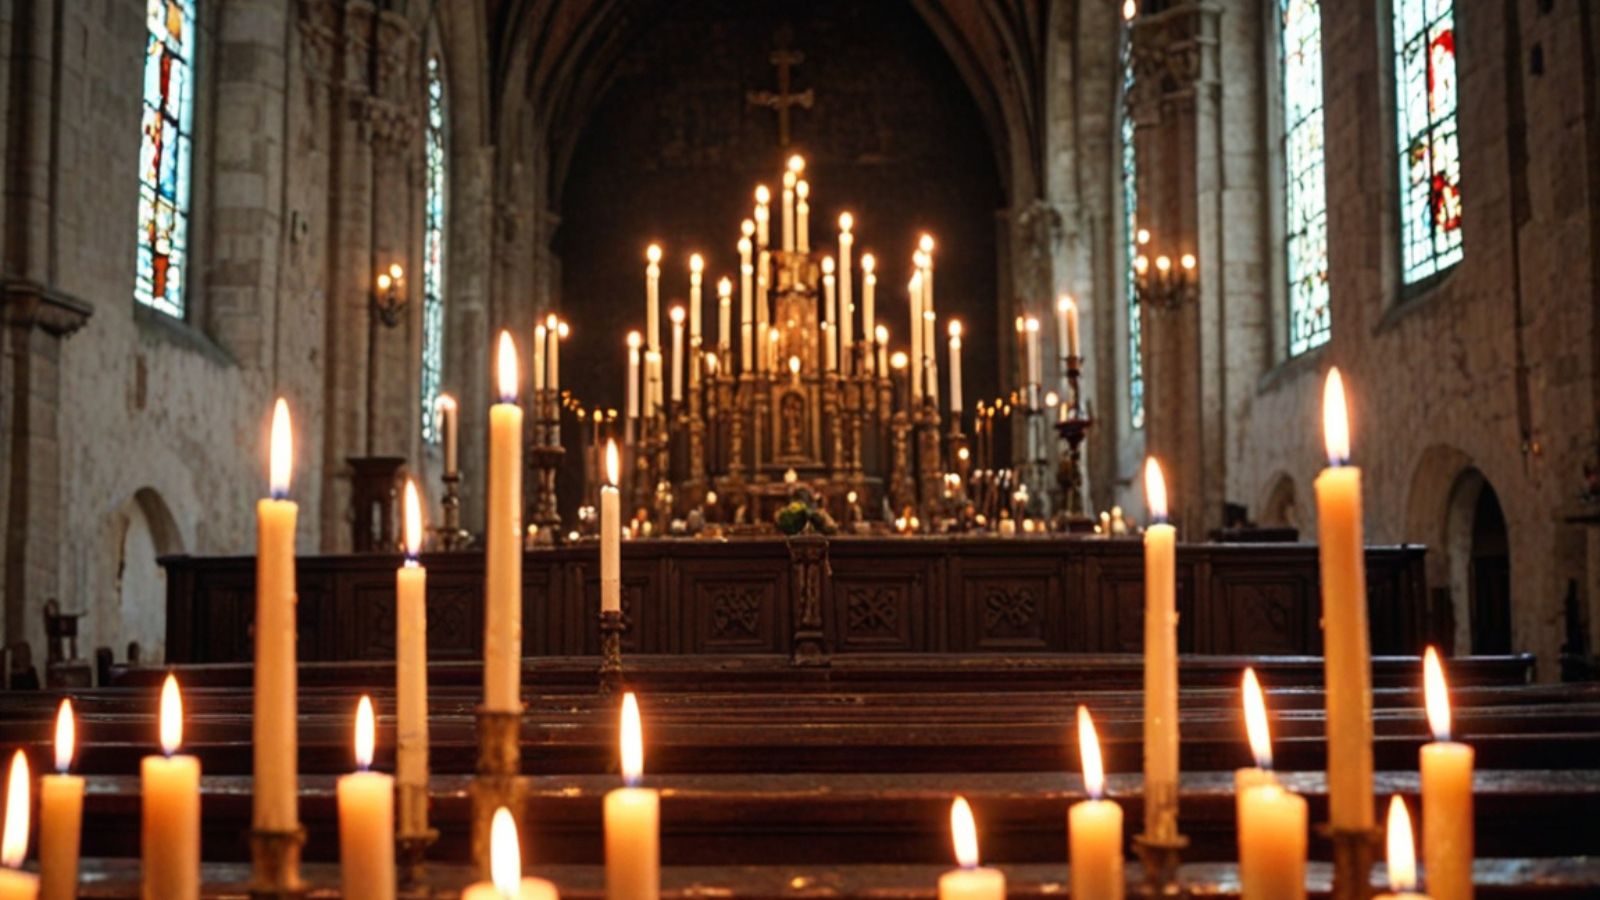 Музыка Возрождения и раннего Барокко при свечах в старинной церкви